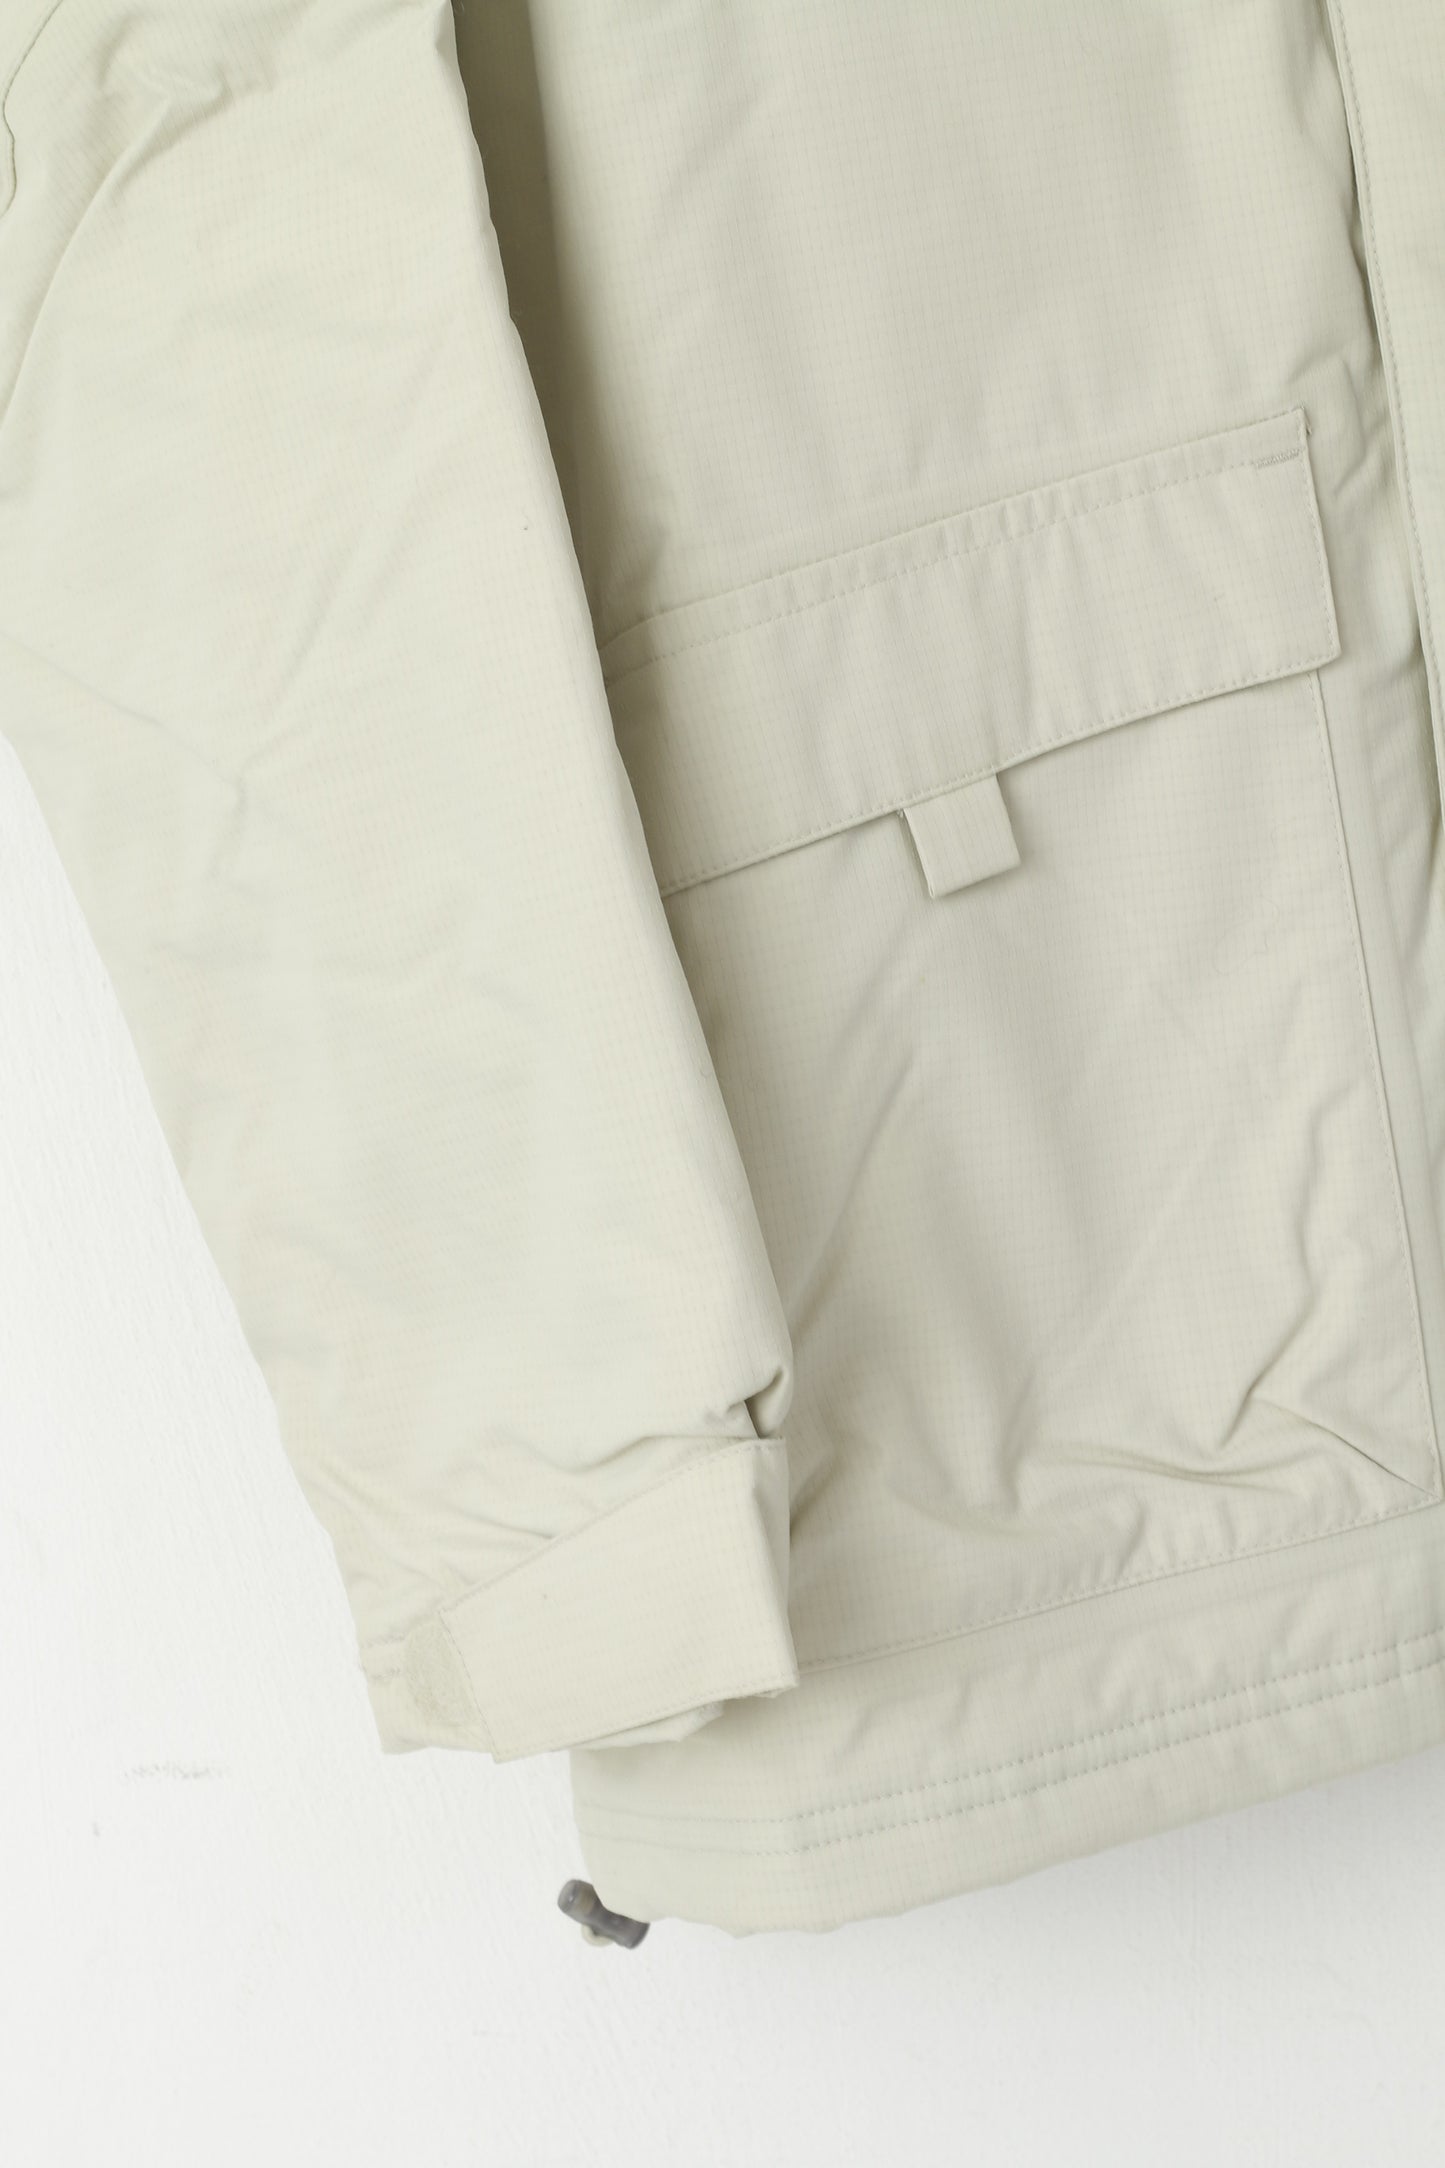 Giacca Adidas da uomo in nylon beige, cappuccio rimovibile, cerniera completa, fodera impermeabile